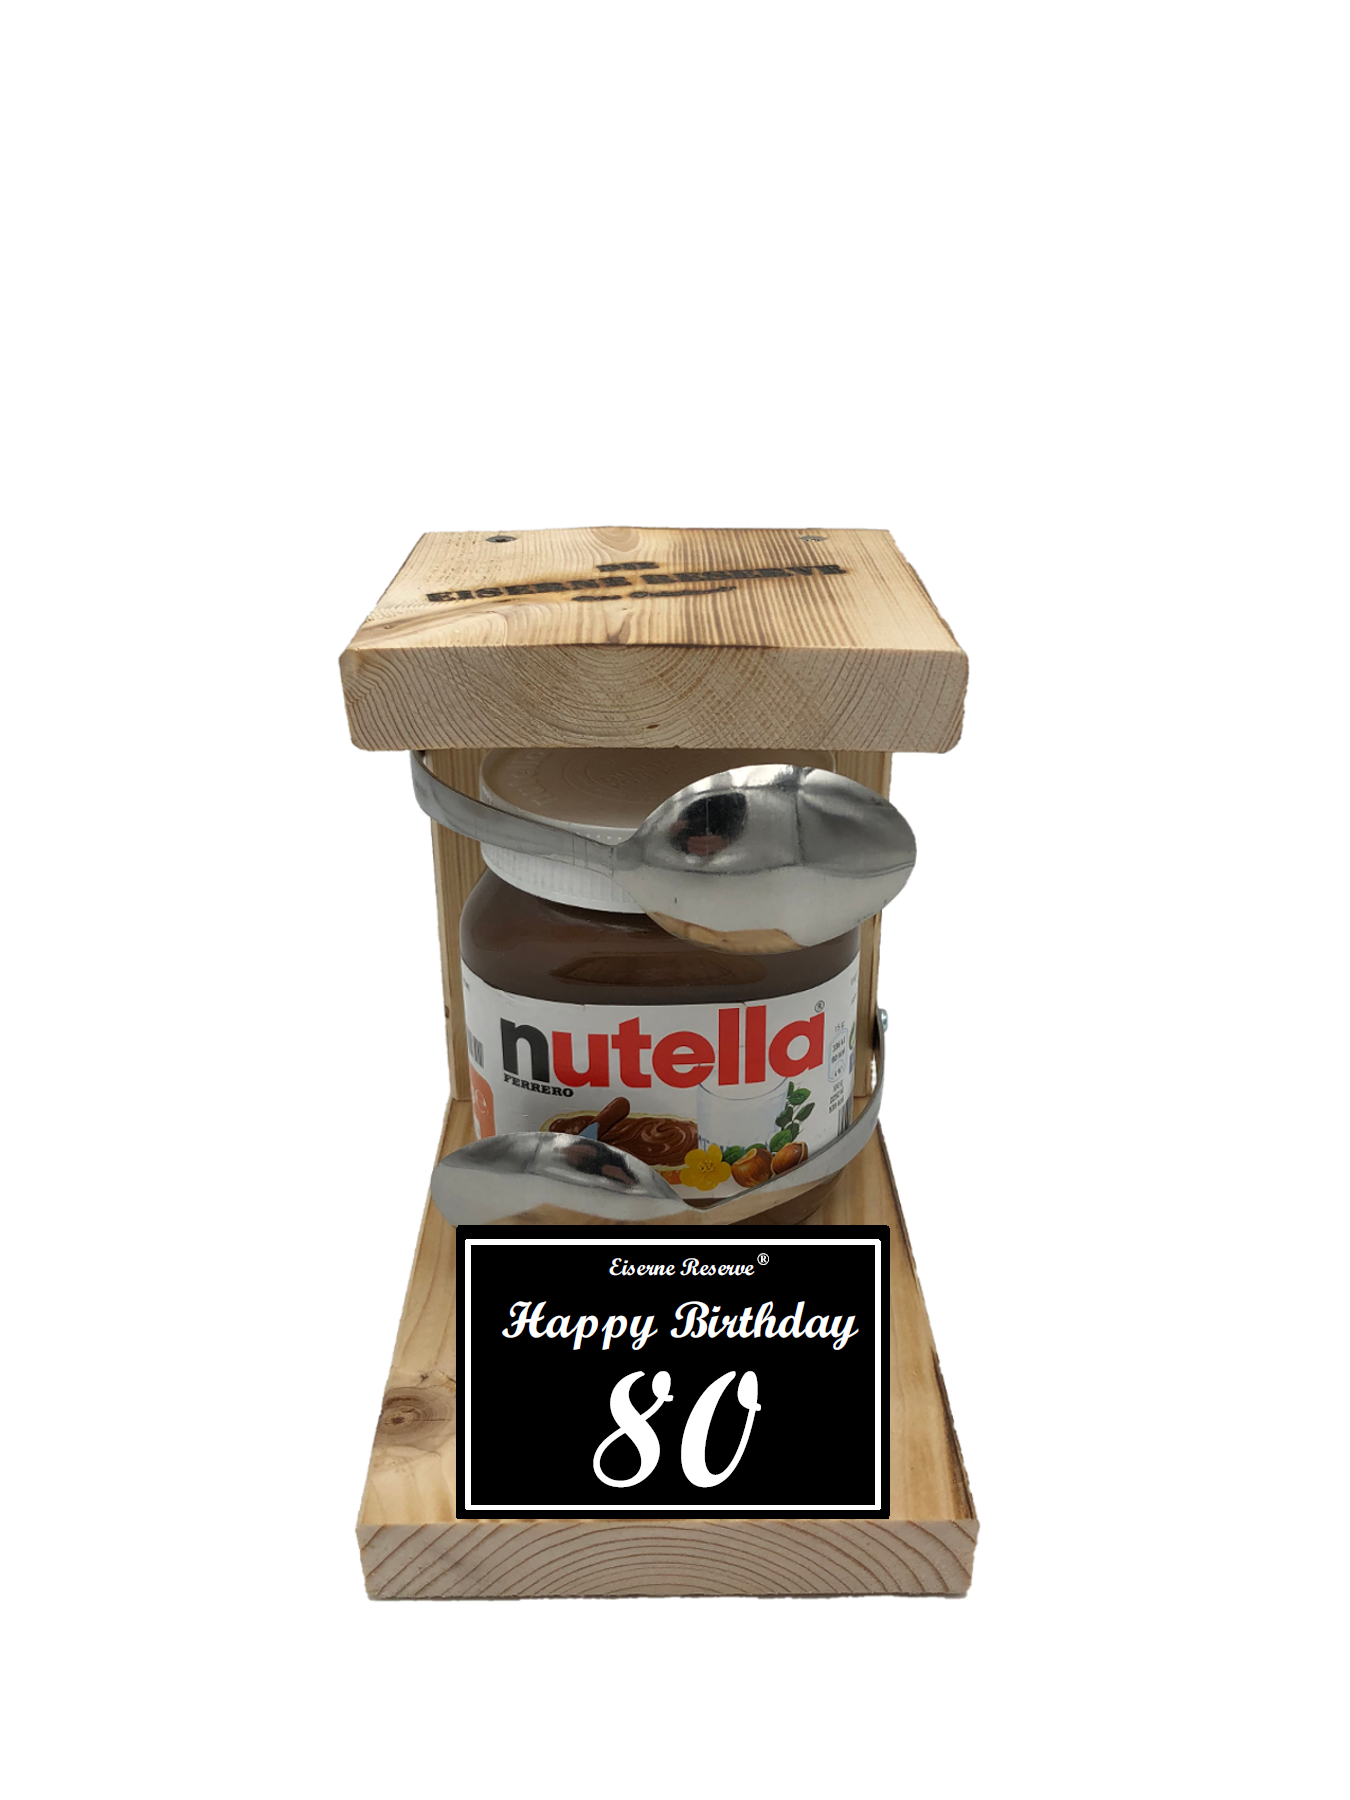 Geburtstag 80 - Eiserne Reserve Löffel Nutella - Geburtstag - Nutella Geschenk